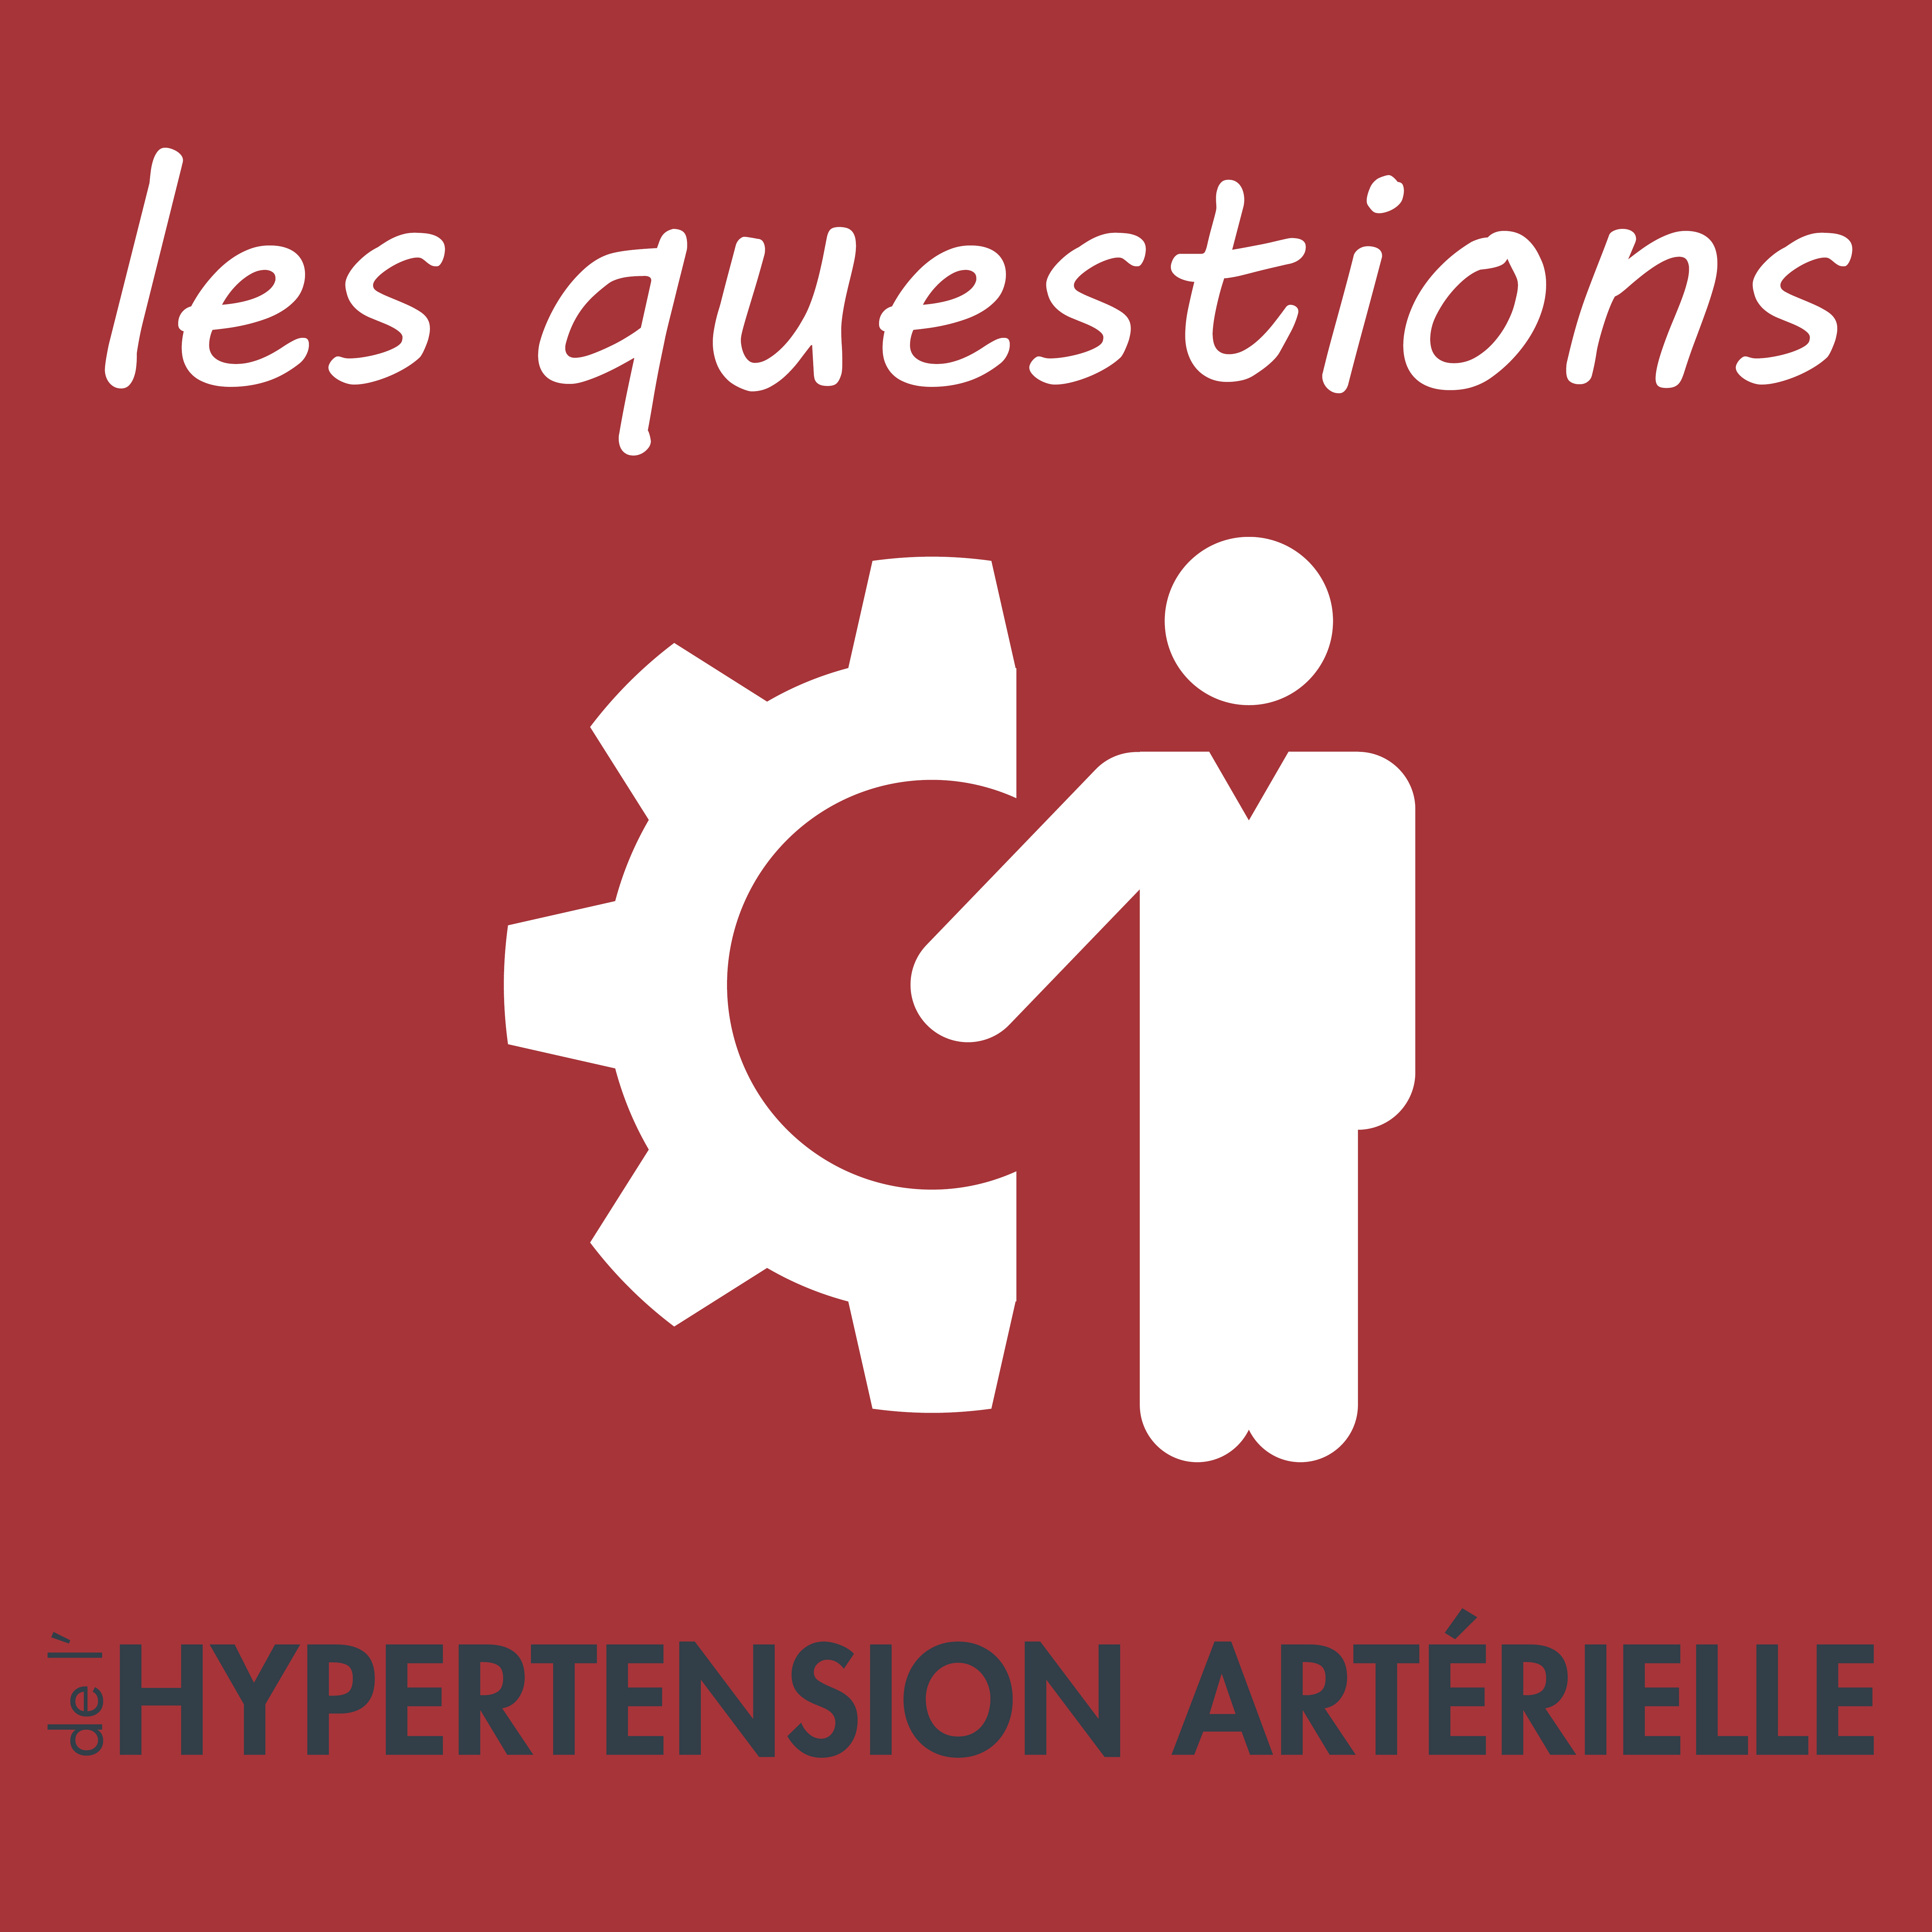 e-santé,patients hypertendus,parcours patient hypertendu,innovation hypertension,fondation hypertension,télésanté